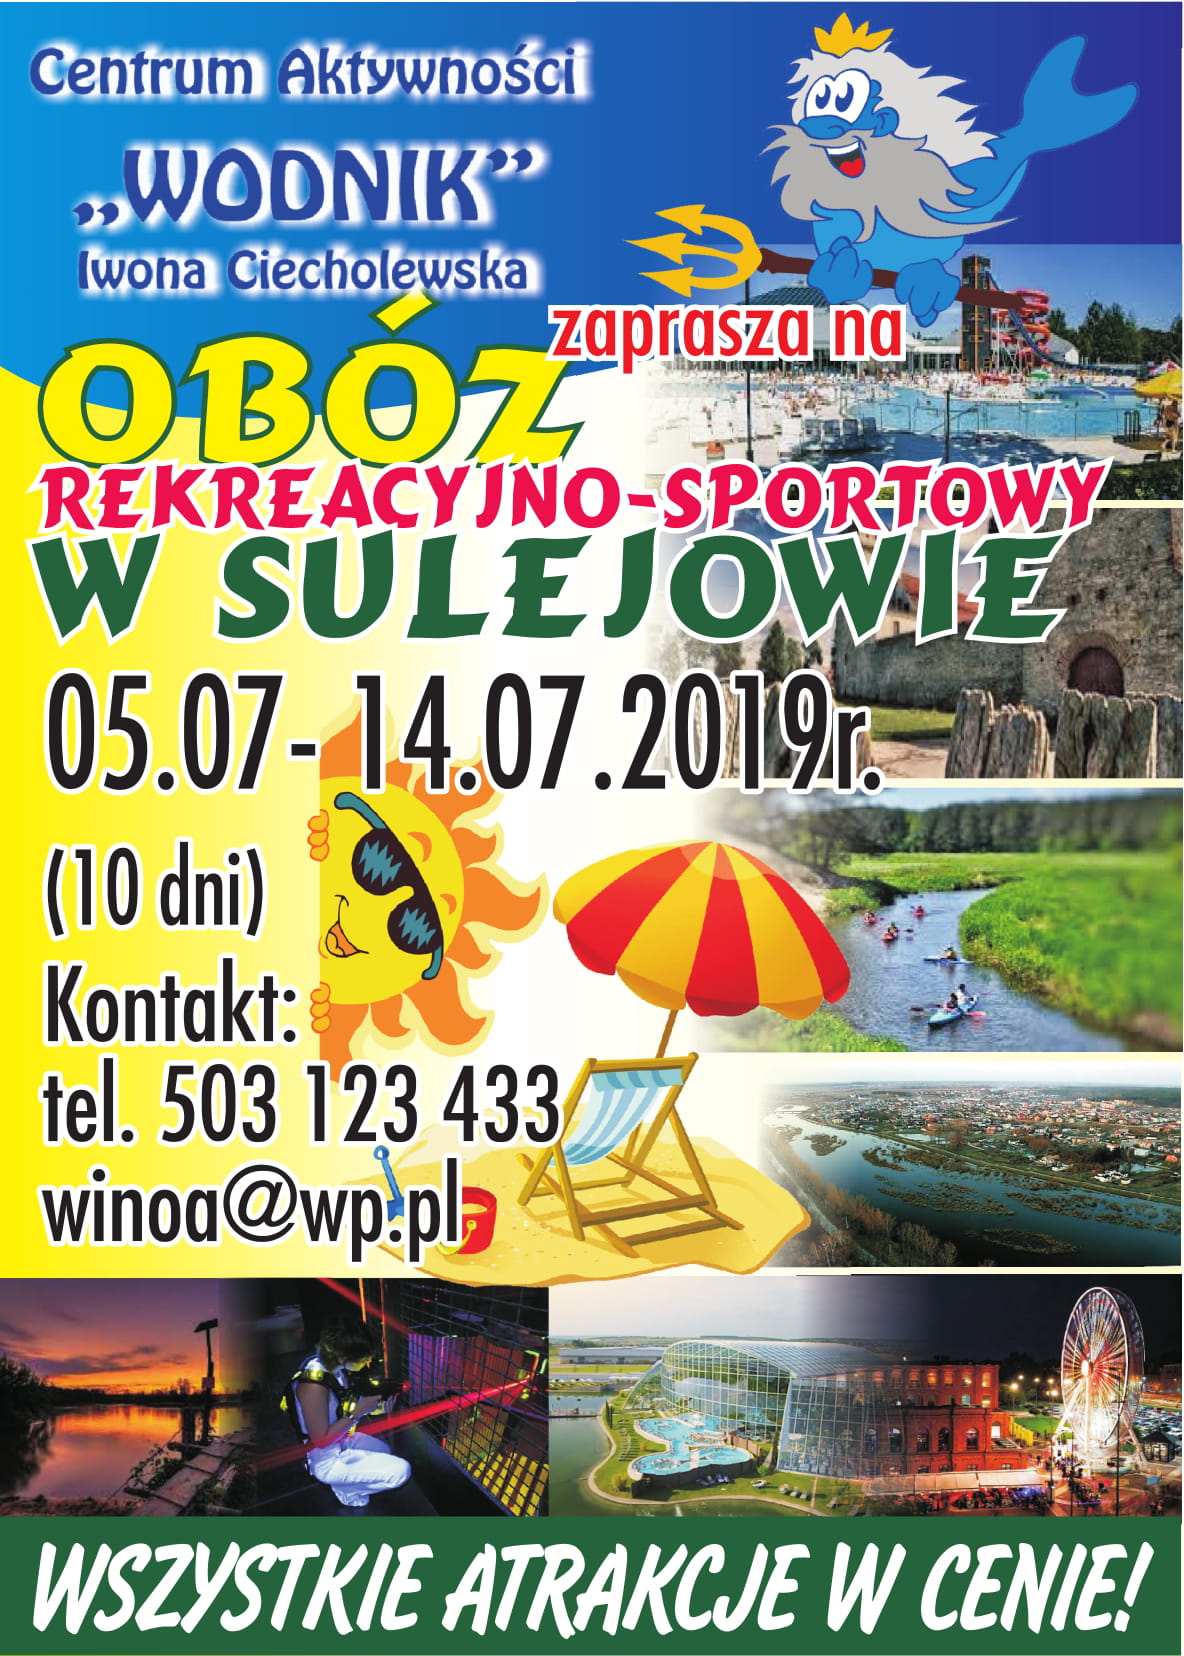 http://m.82-200.pl/2019/05/orig/oboz-sportowy-sulejow-wodnik-2019-ulotka-2-4535.jpg